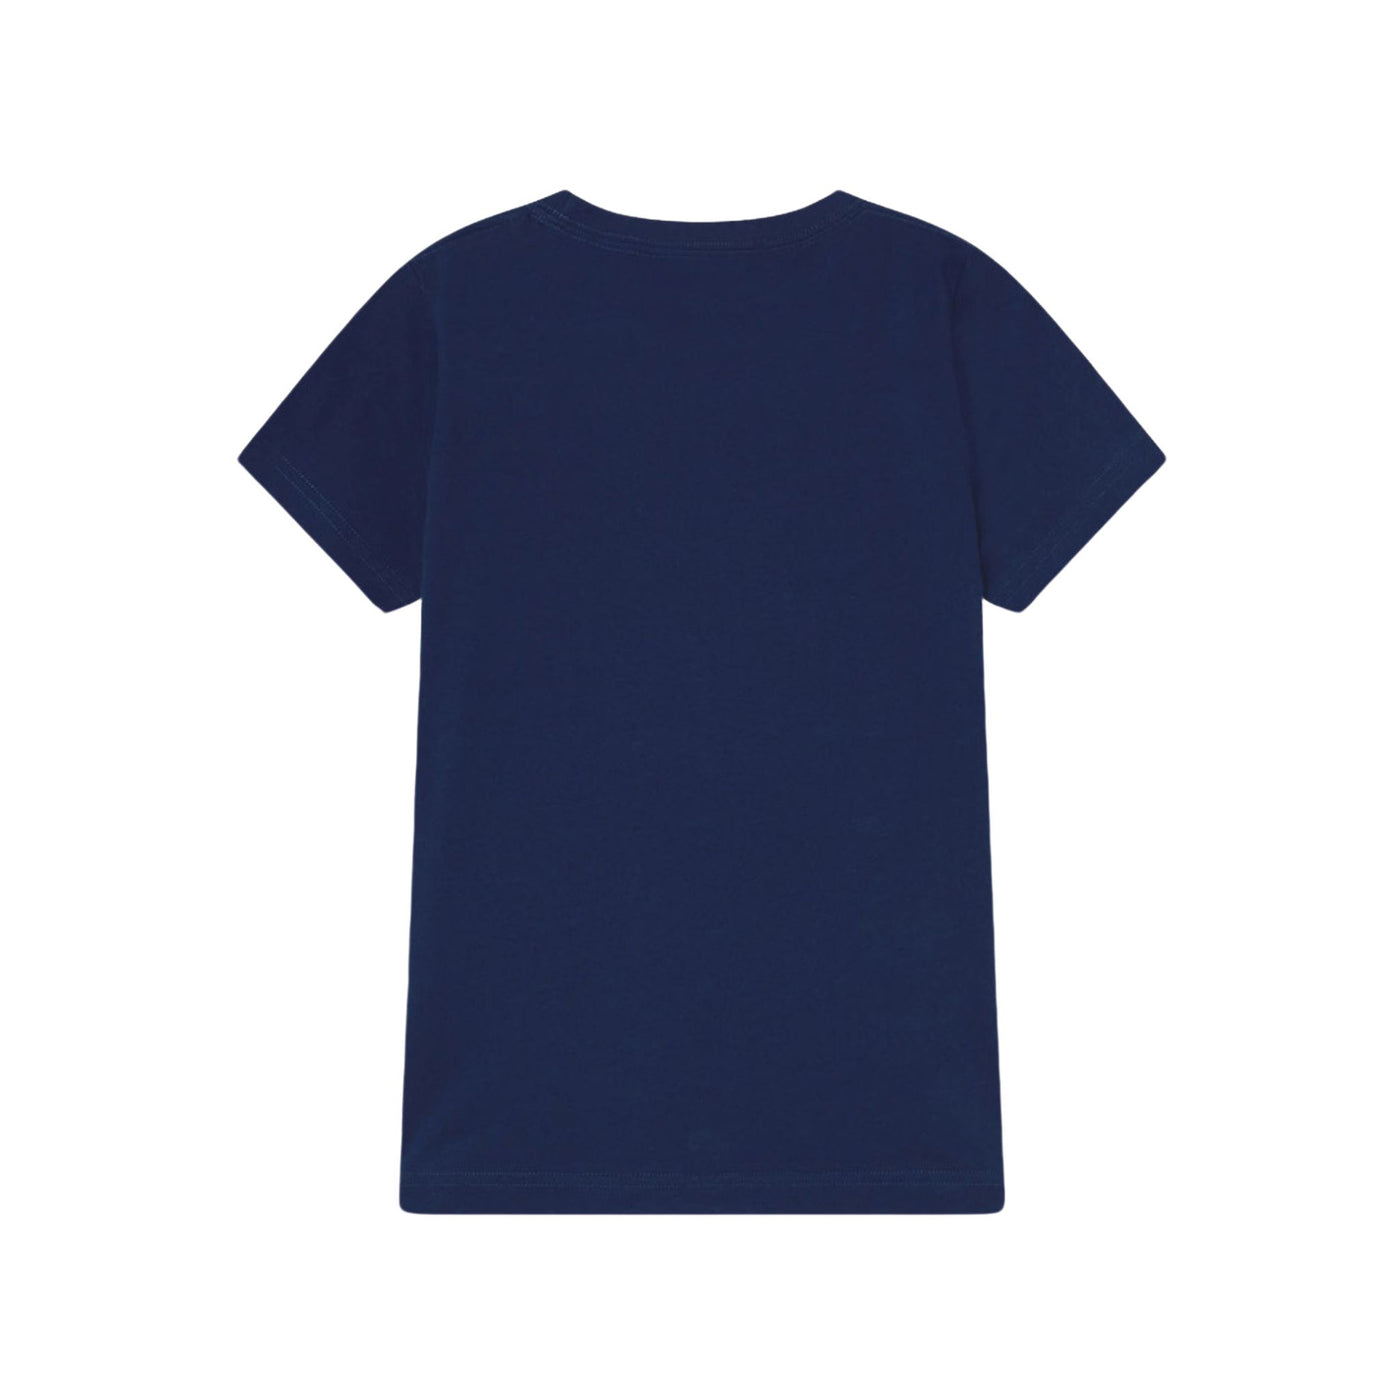 T-shirt Bambino dal design classico realizzata in puro cotone